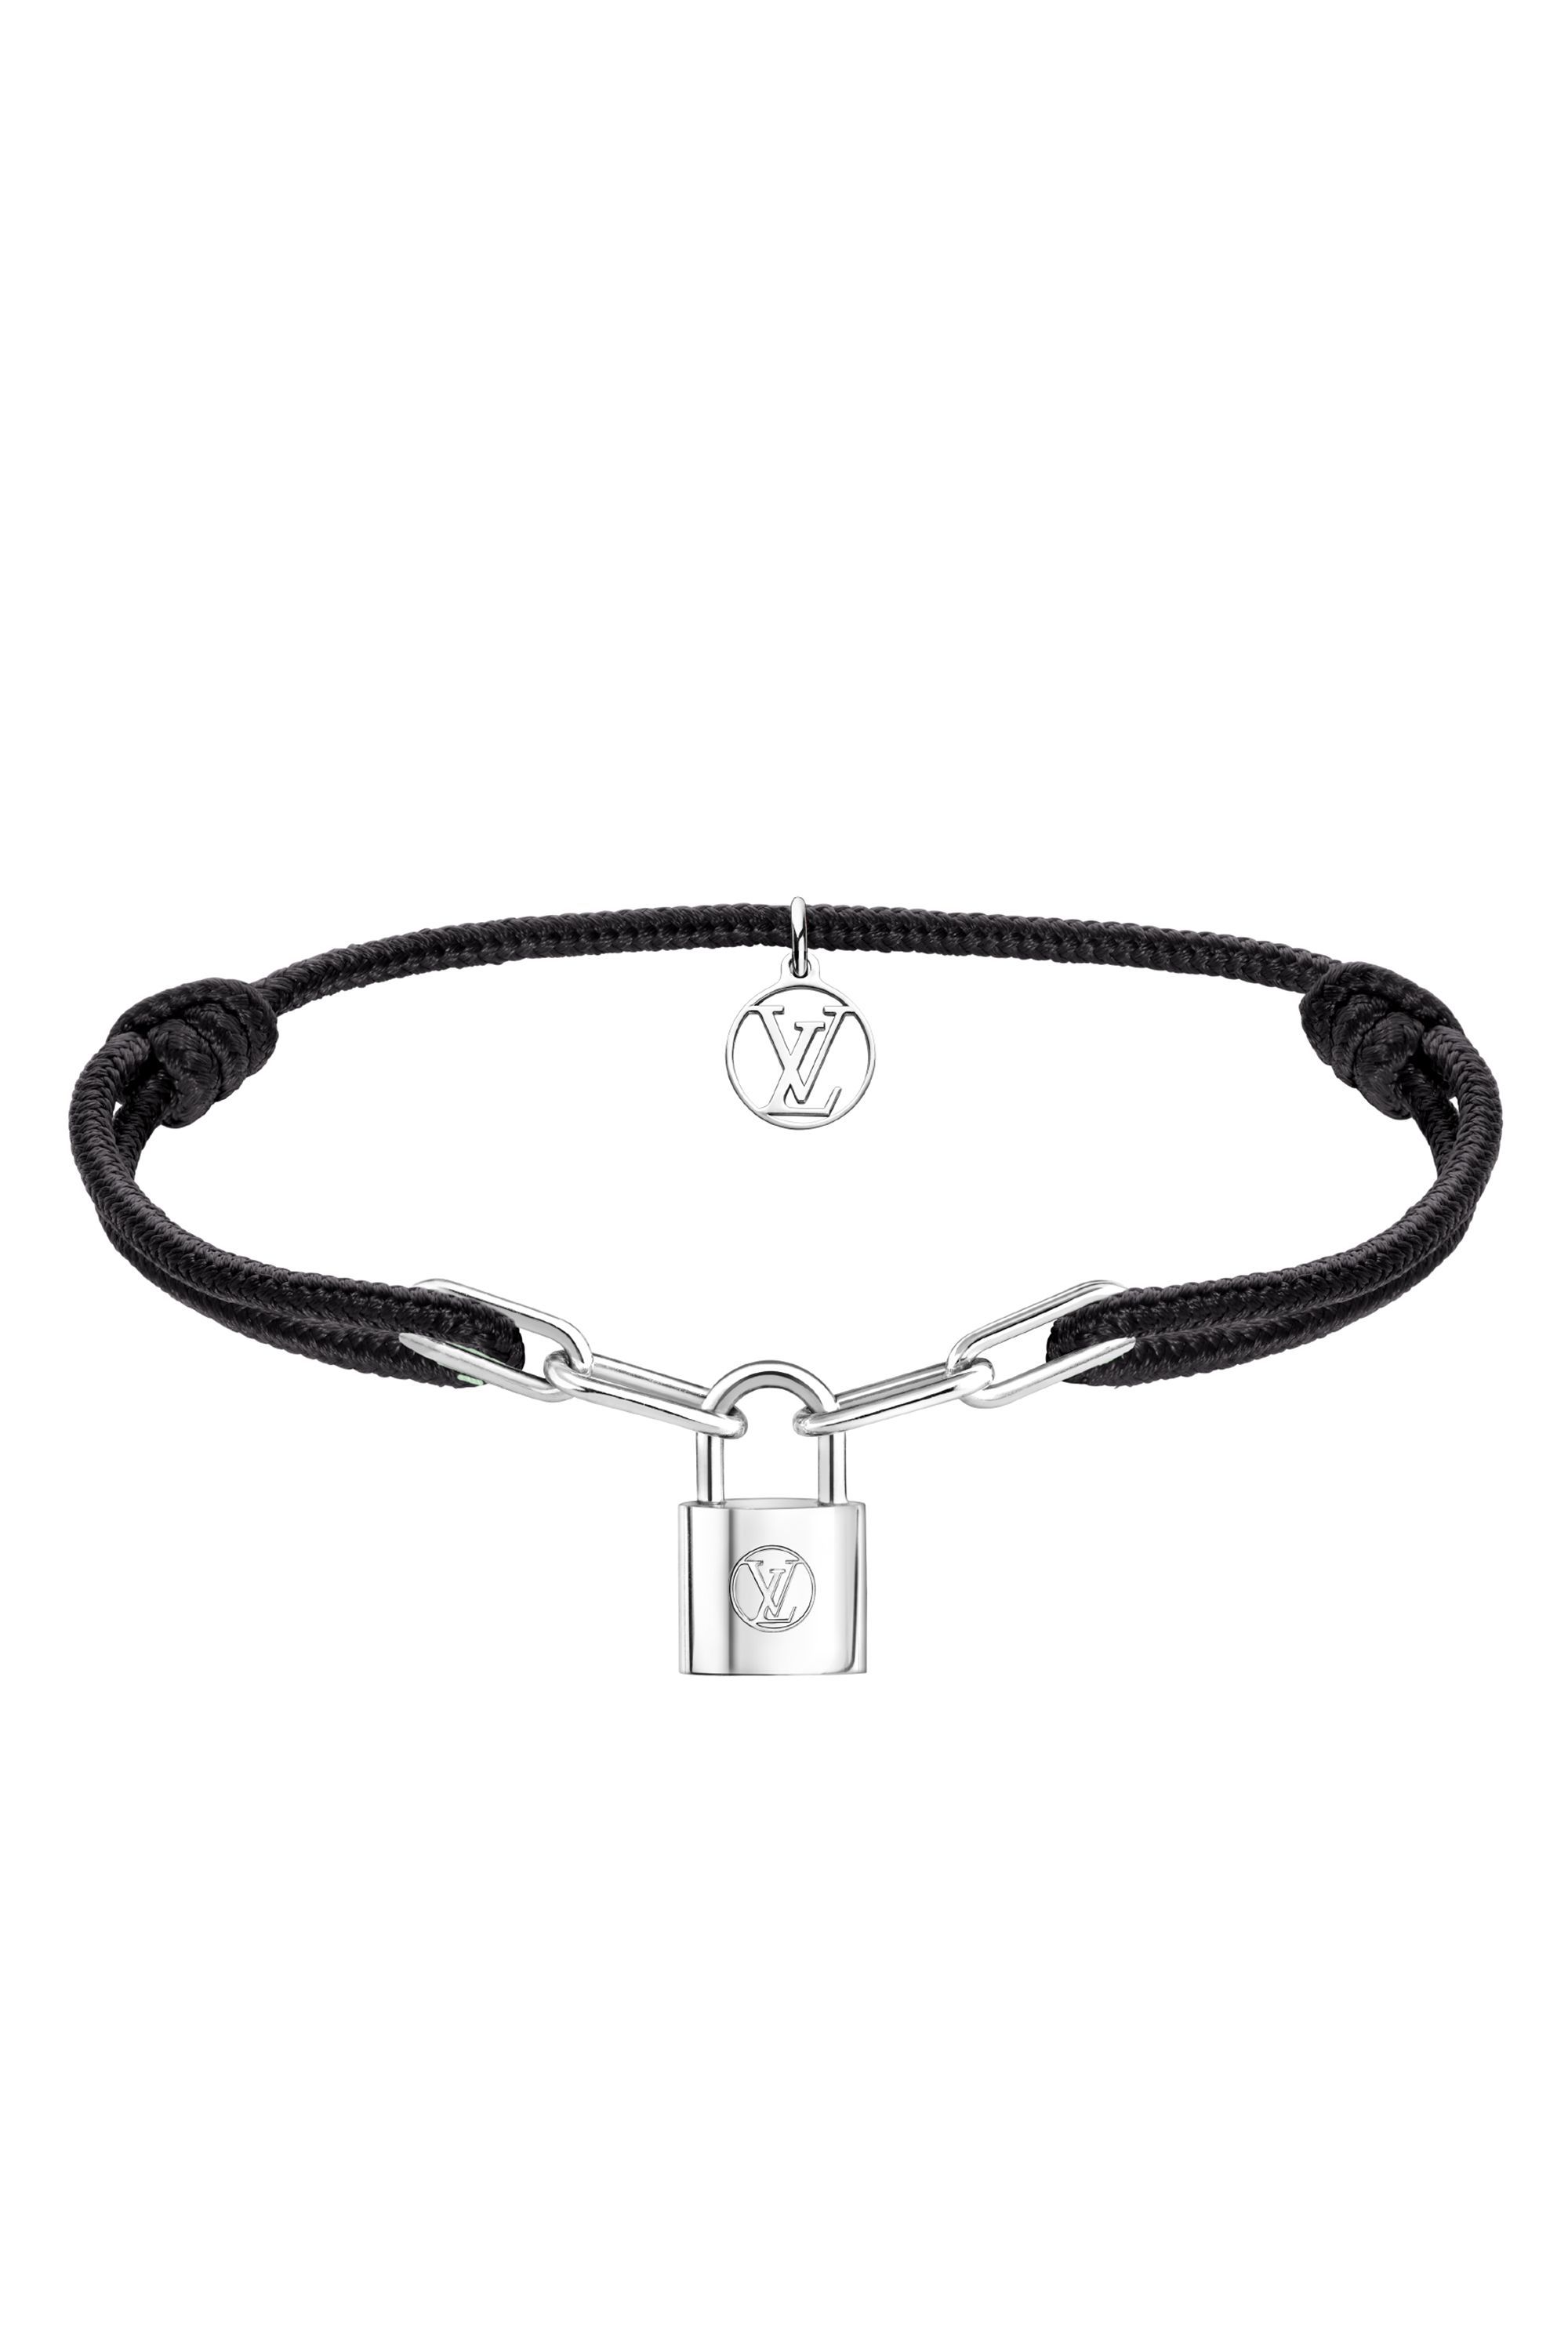 Louis Vuitton Silver Lockit X Virgil Abloh Bracelet, Black Titanium (Q05270)